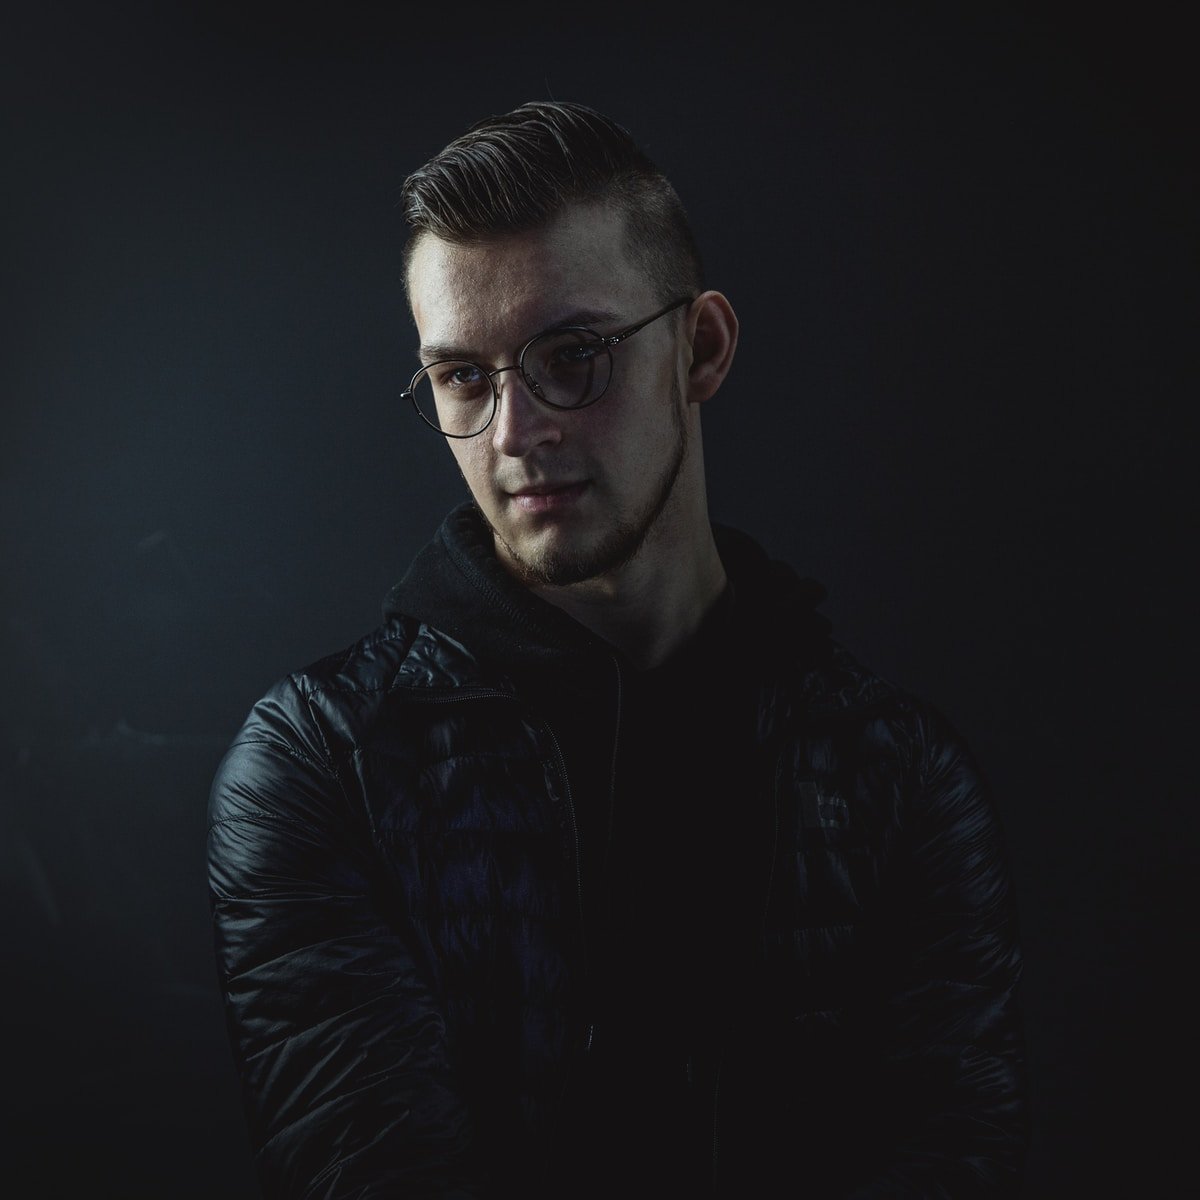 man in black leather jacket wearing eyeglasses